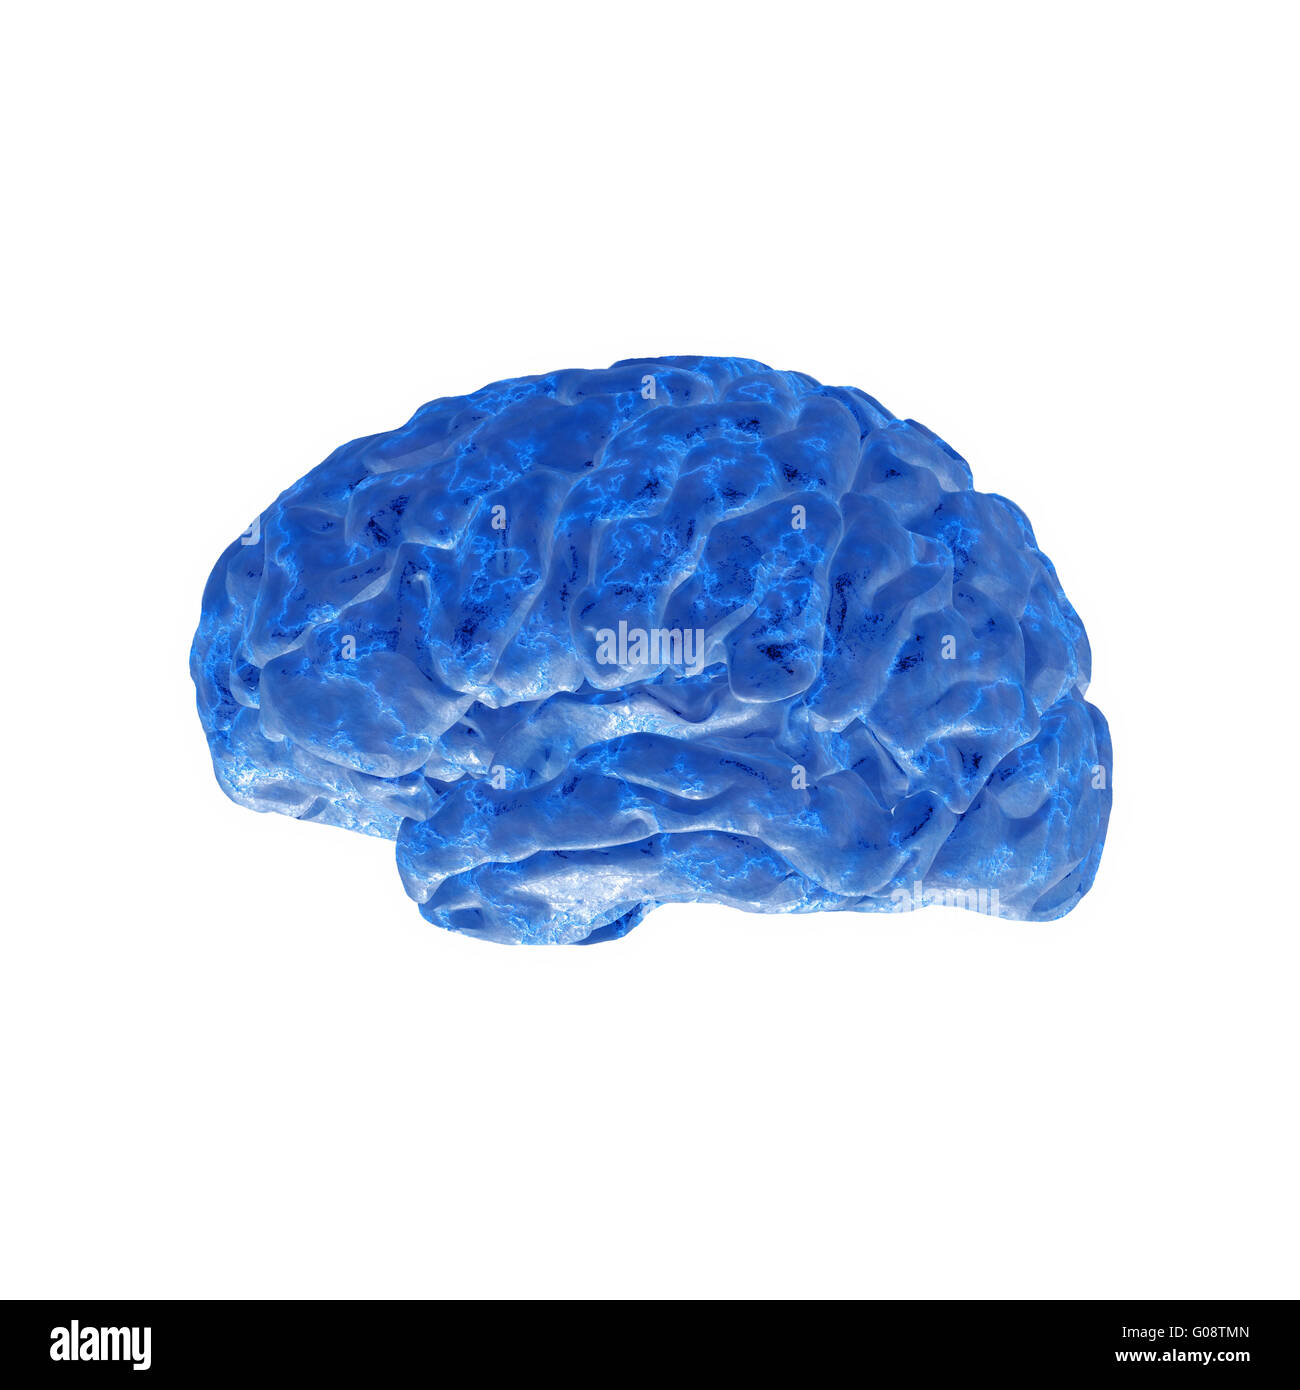 cerveau humain Banque D'Images